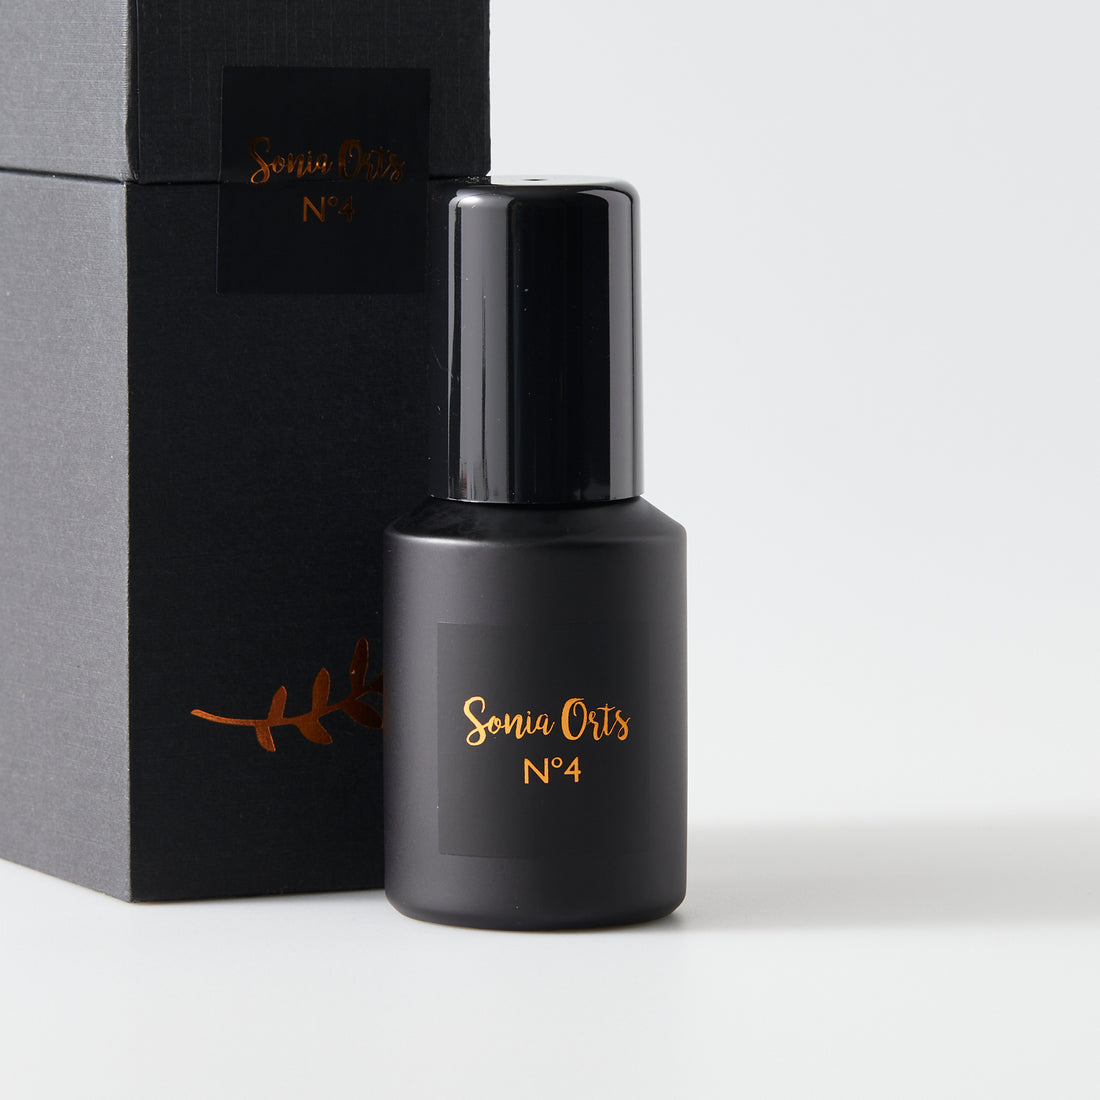 Sonia Orts No 4 natural perfume